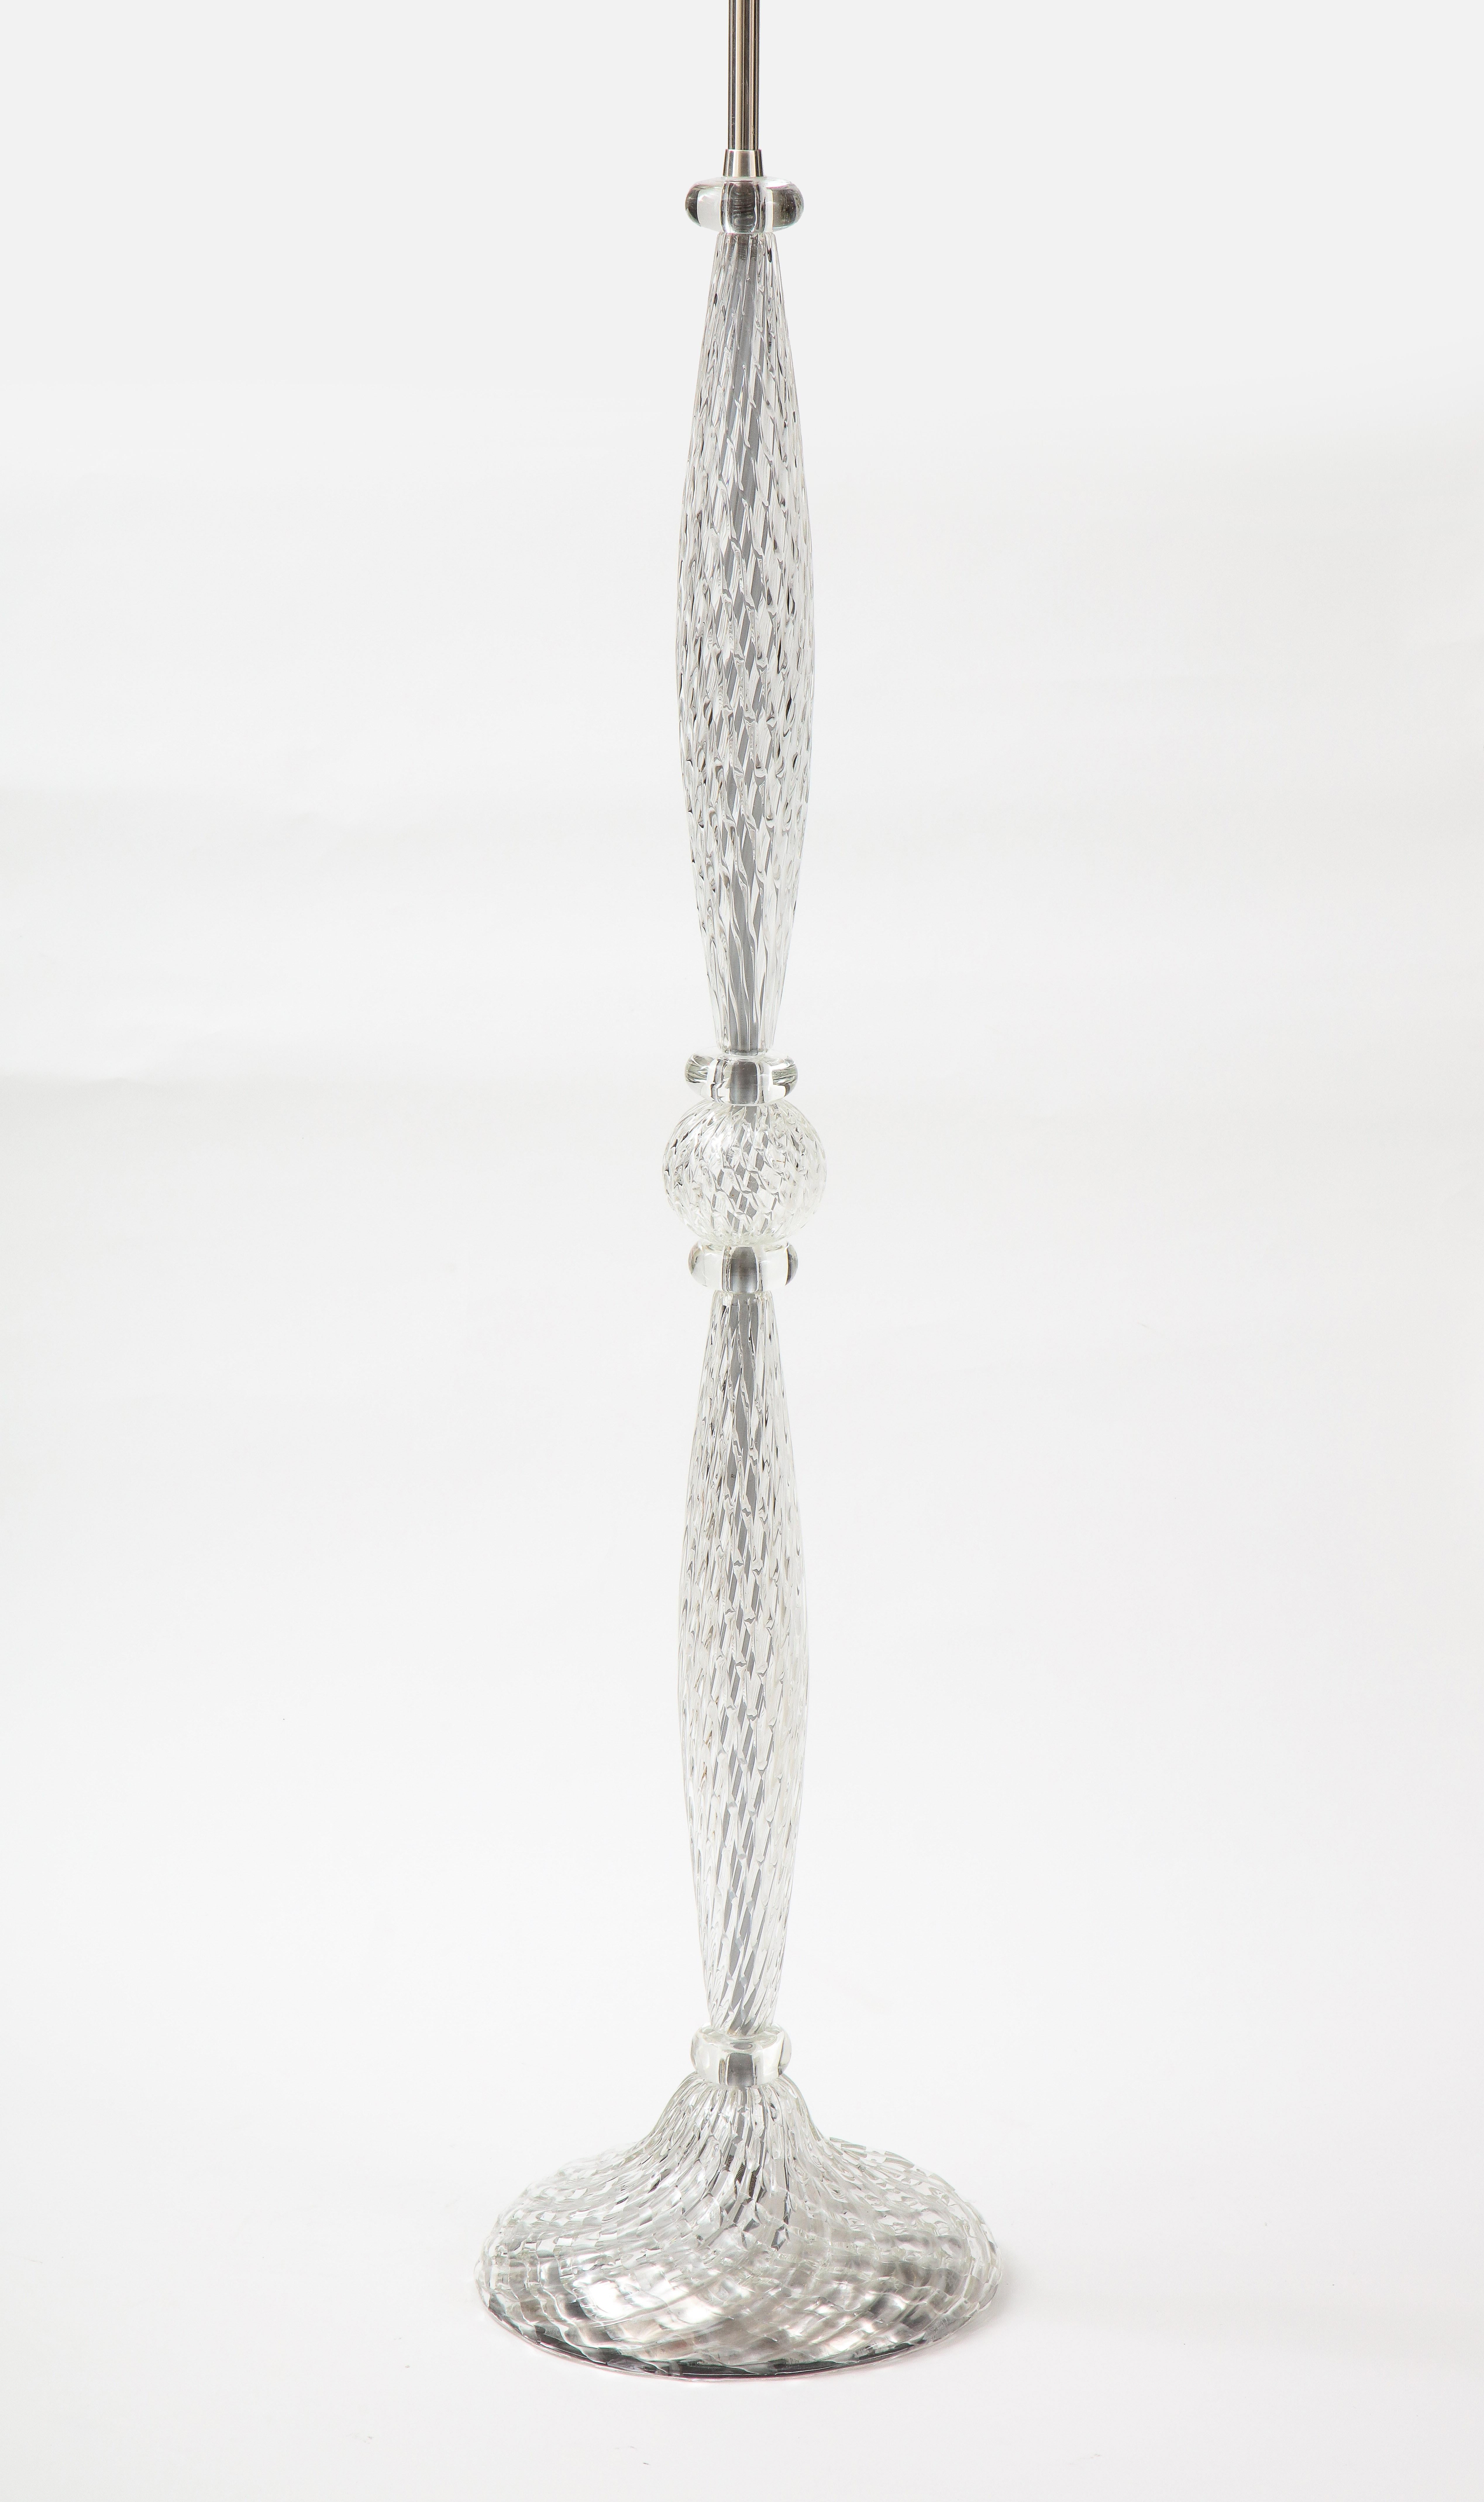 lampadaire en verre de Murano à motif de diamant des années 1950 par Archimede Seguso.
La lampe a été recâblée avec un double faisceau réglable en nickel poli.